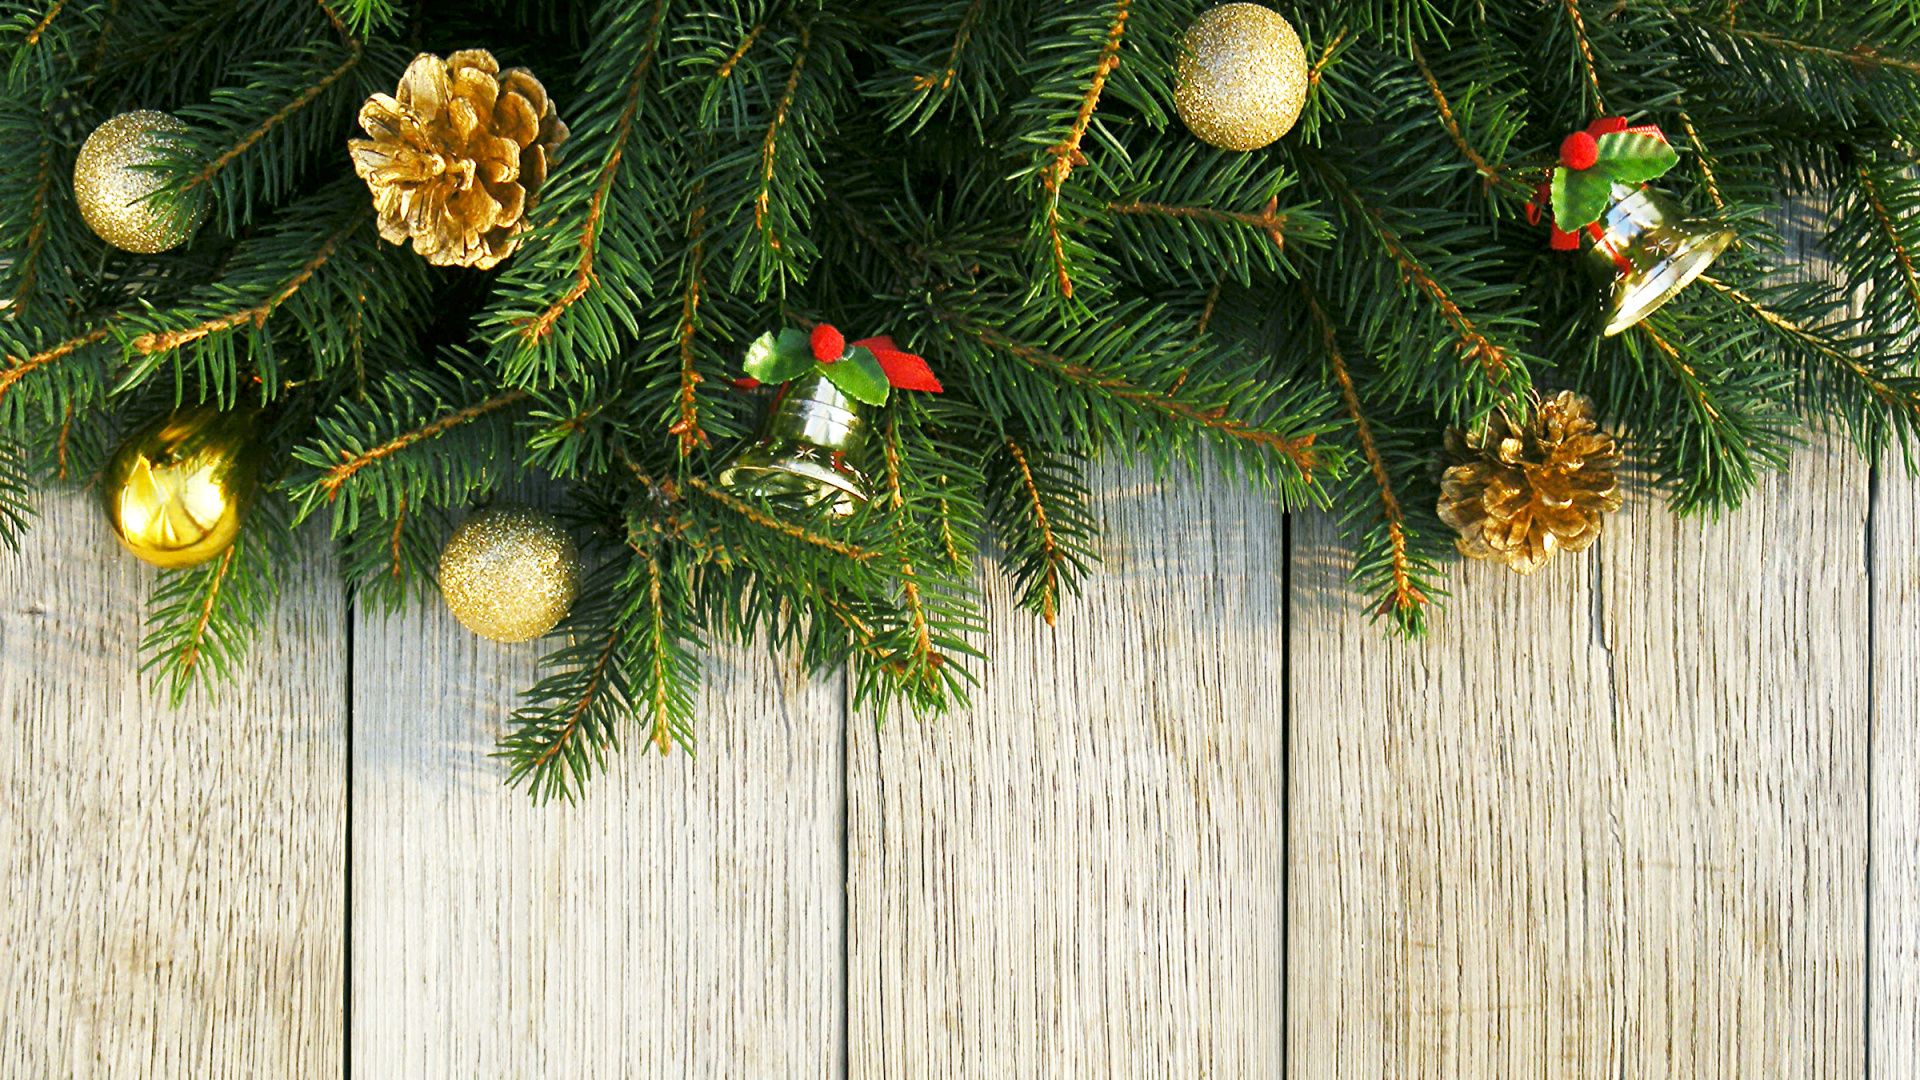 Weihnachten, Neujahr, Christmas Ornament, Weihnachtsdekoration, Weihnachtsbaum. Wallpaper in 1920x1080 Resolution